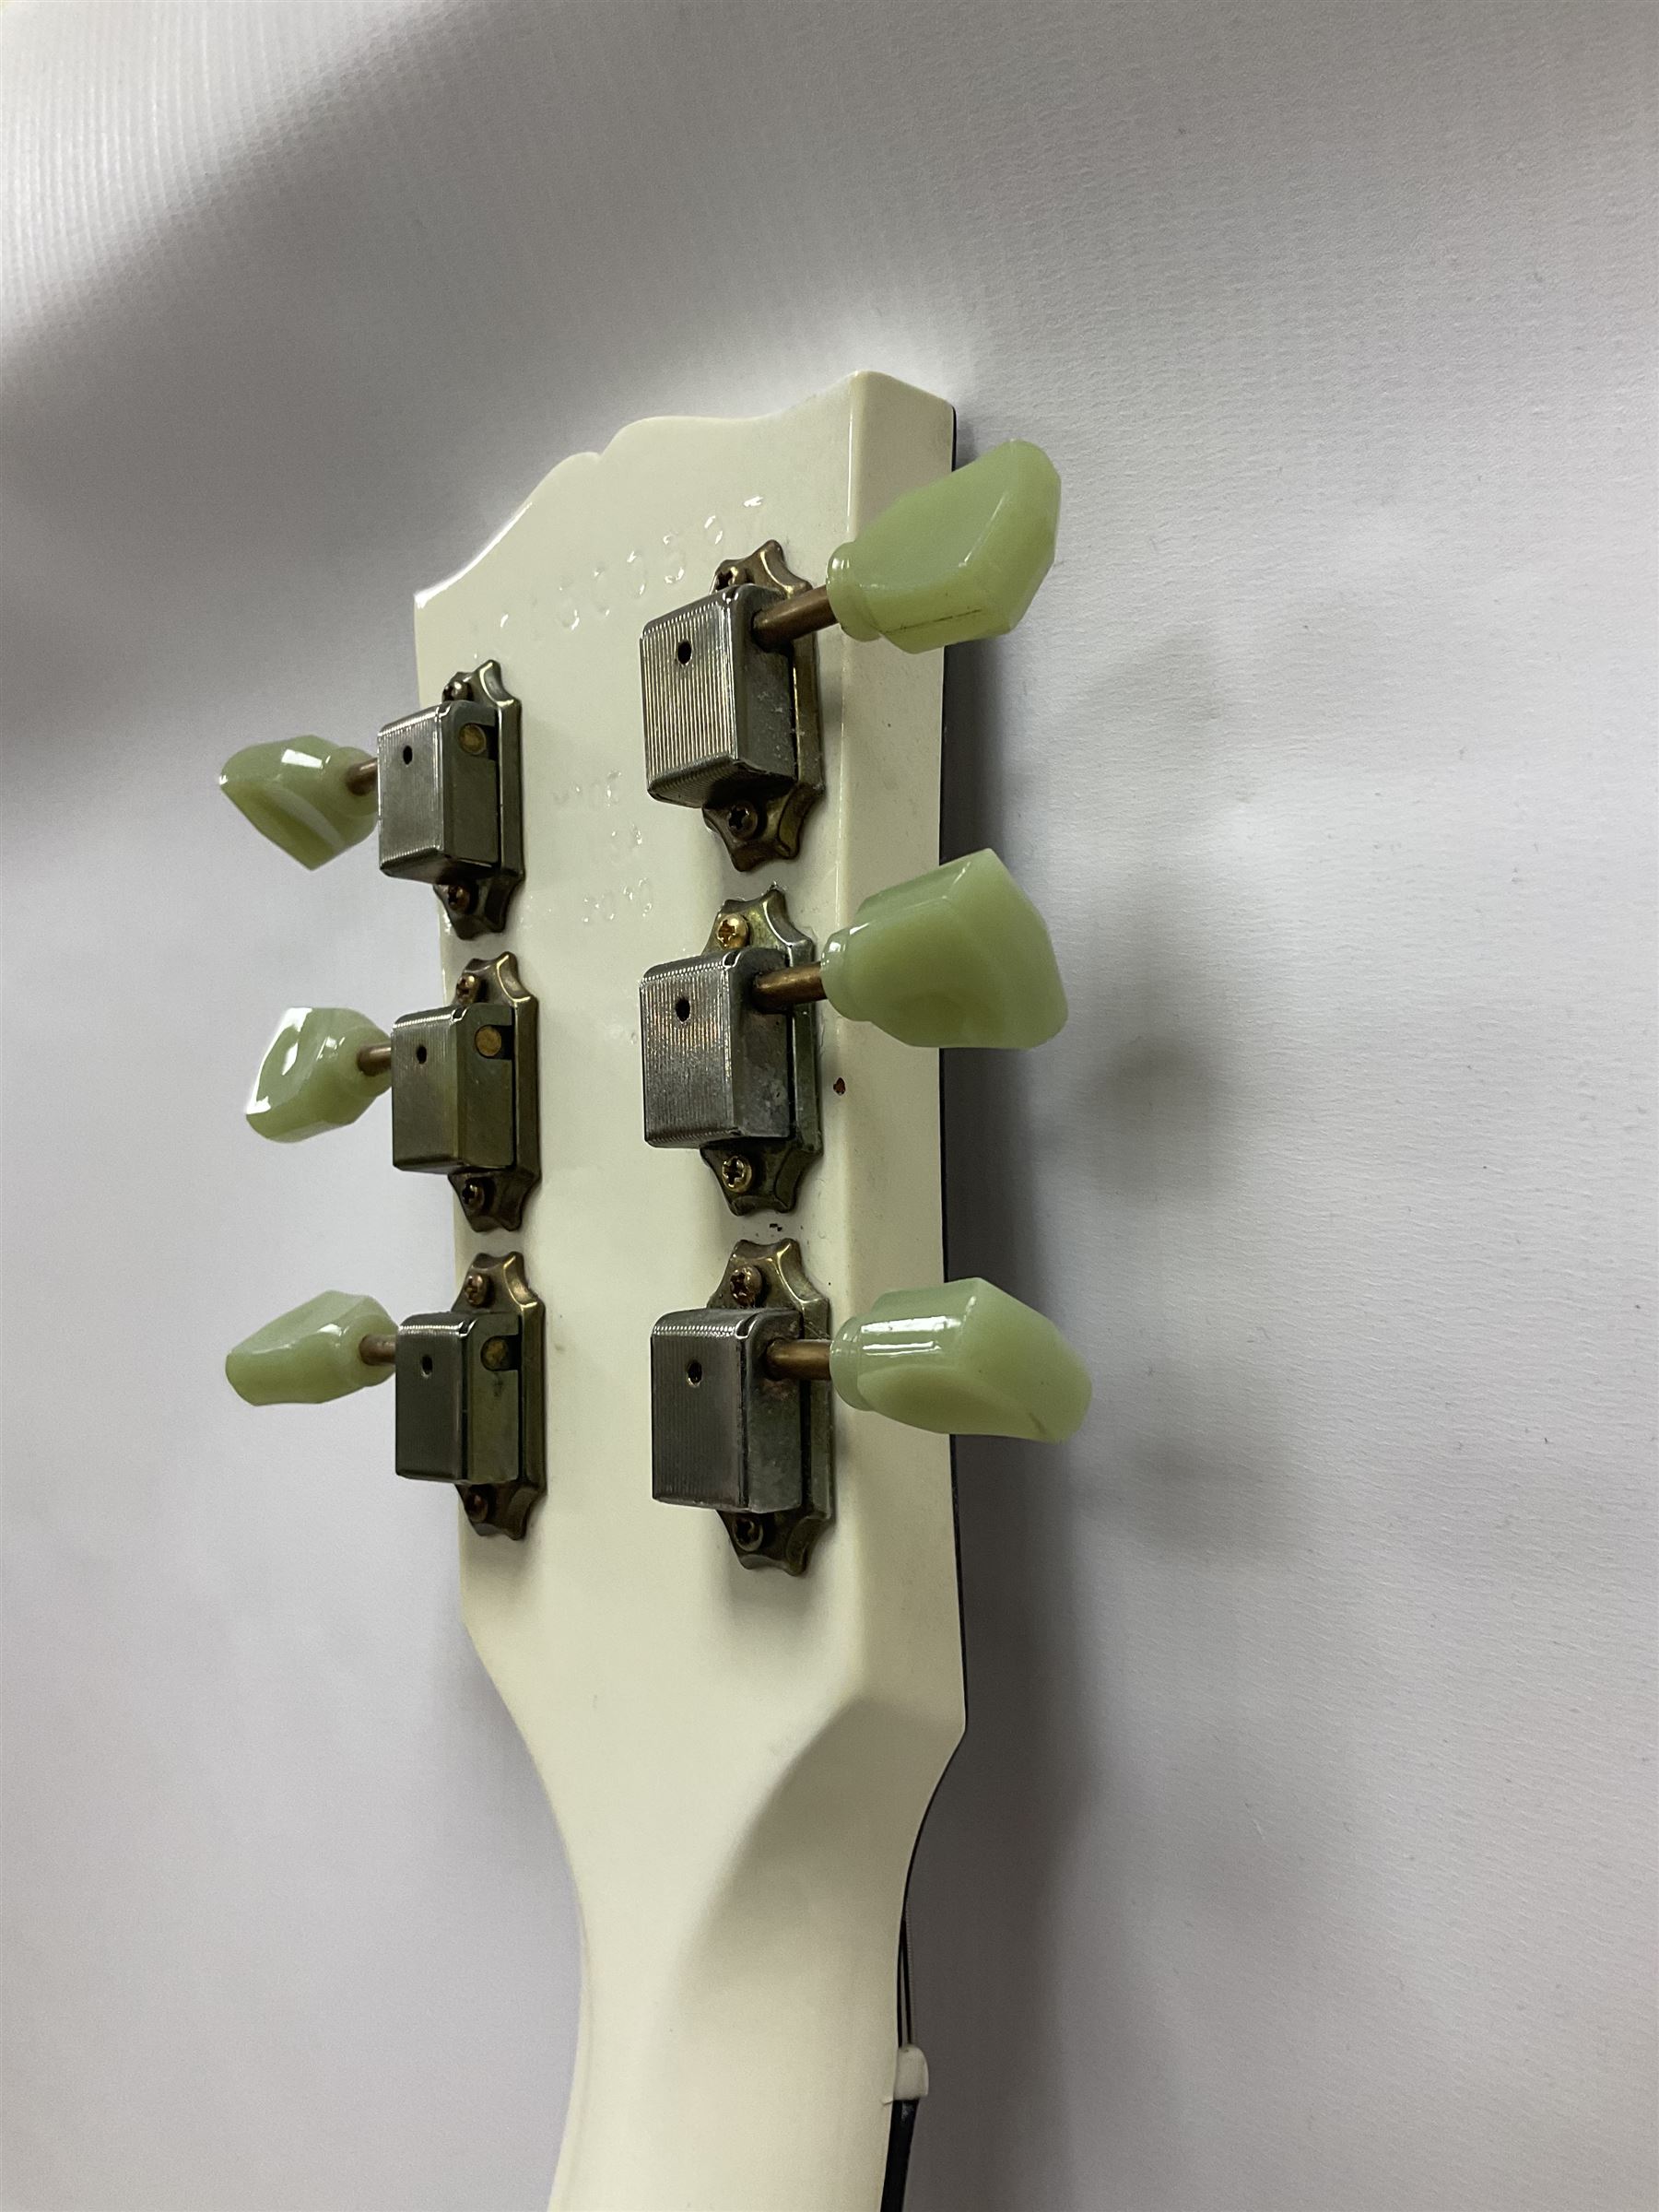 2010 Gibson Les Paul studio guitar - Image 14 of 24